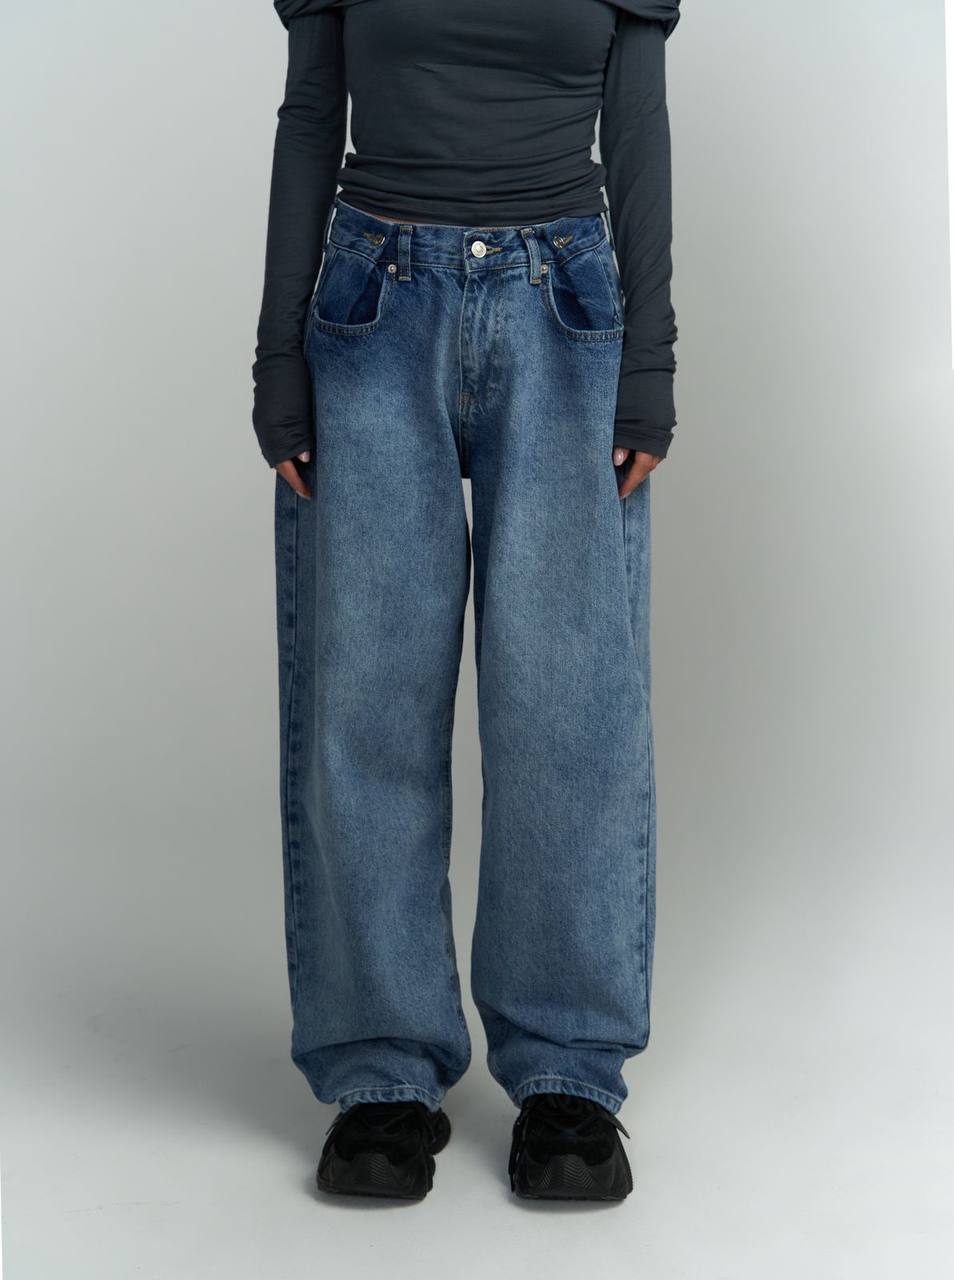 Spodnie Taya Jeans zdjęcie 1